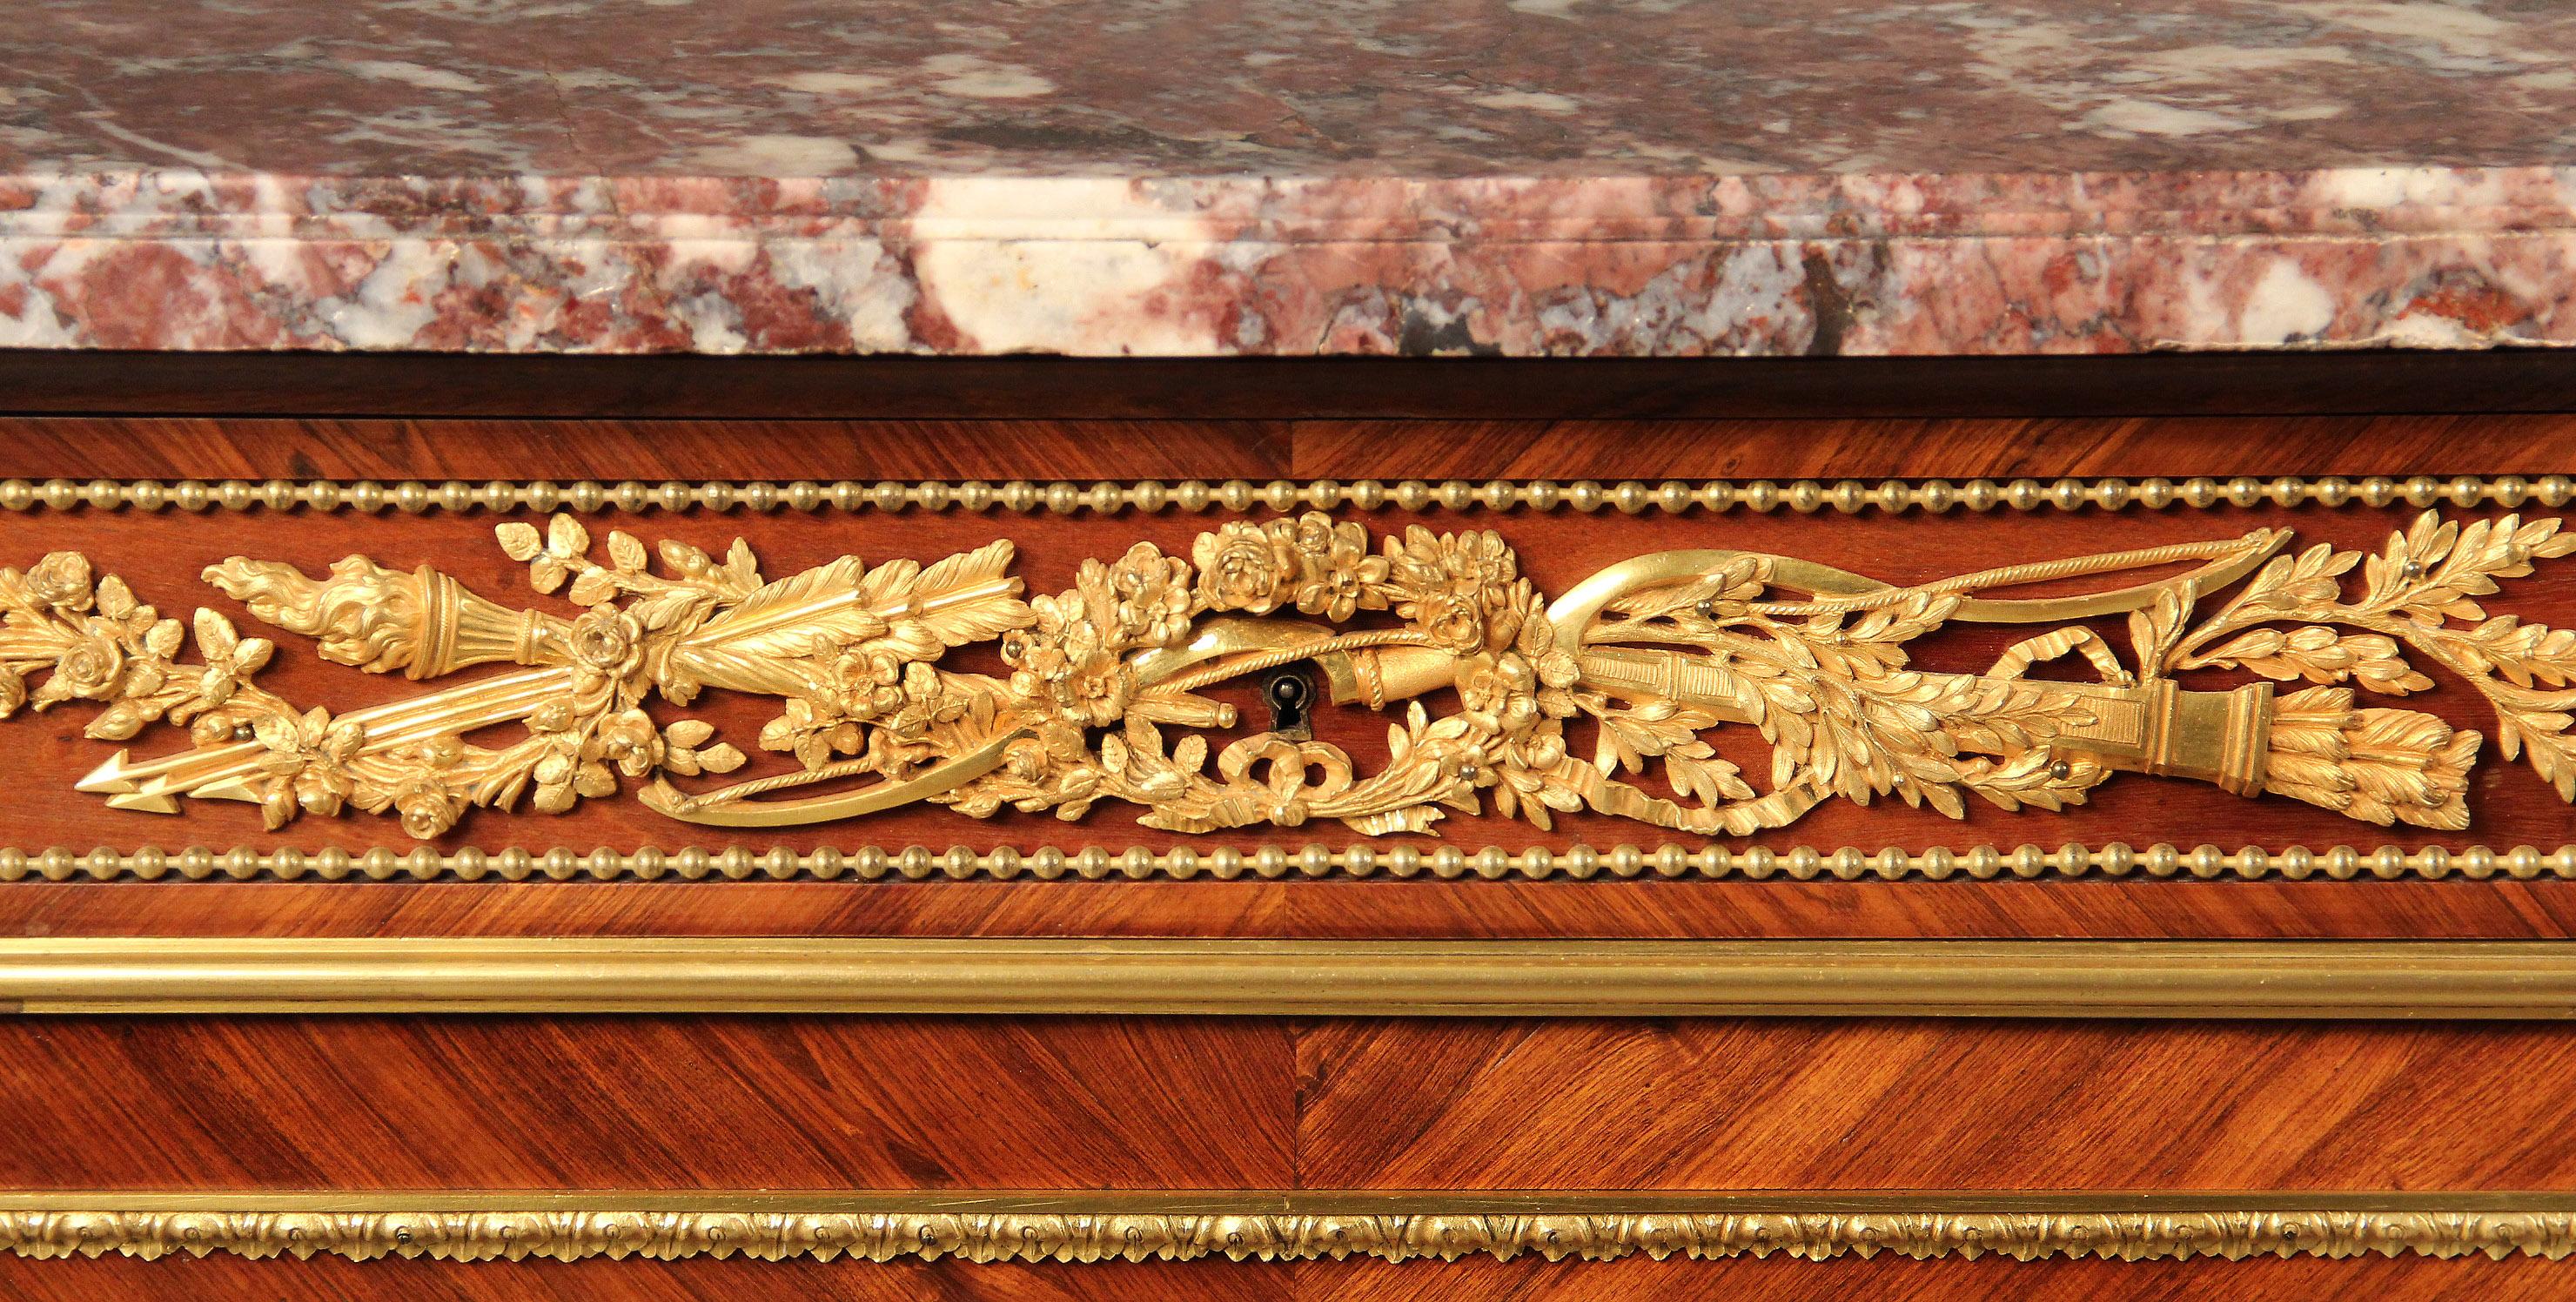 Une impressionnante armoire / serveur de style Louis XVI de la fin du 19ème siècle montée en bronze doré par Henry Dasson

Henry Dasson

Un plateau en marbre démilonné au-dessus d'un long tiroir central avec des montures en bronze représentant